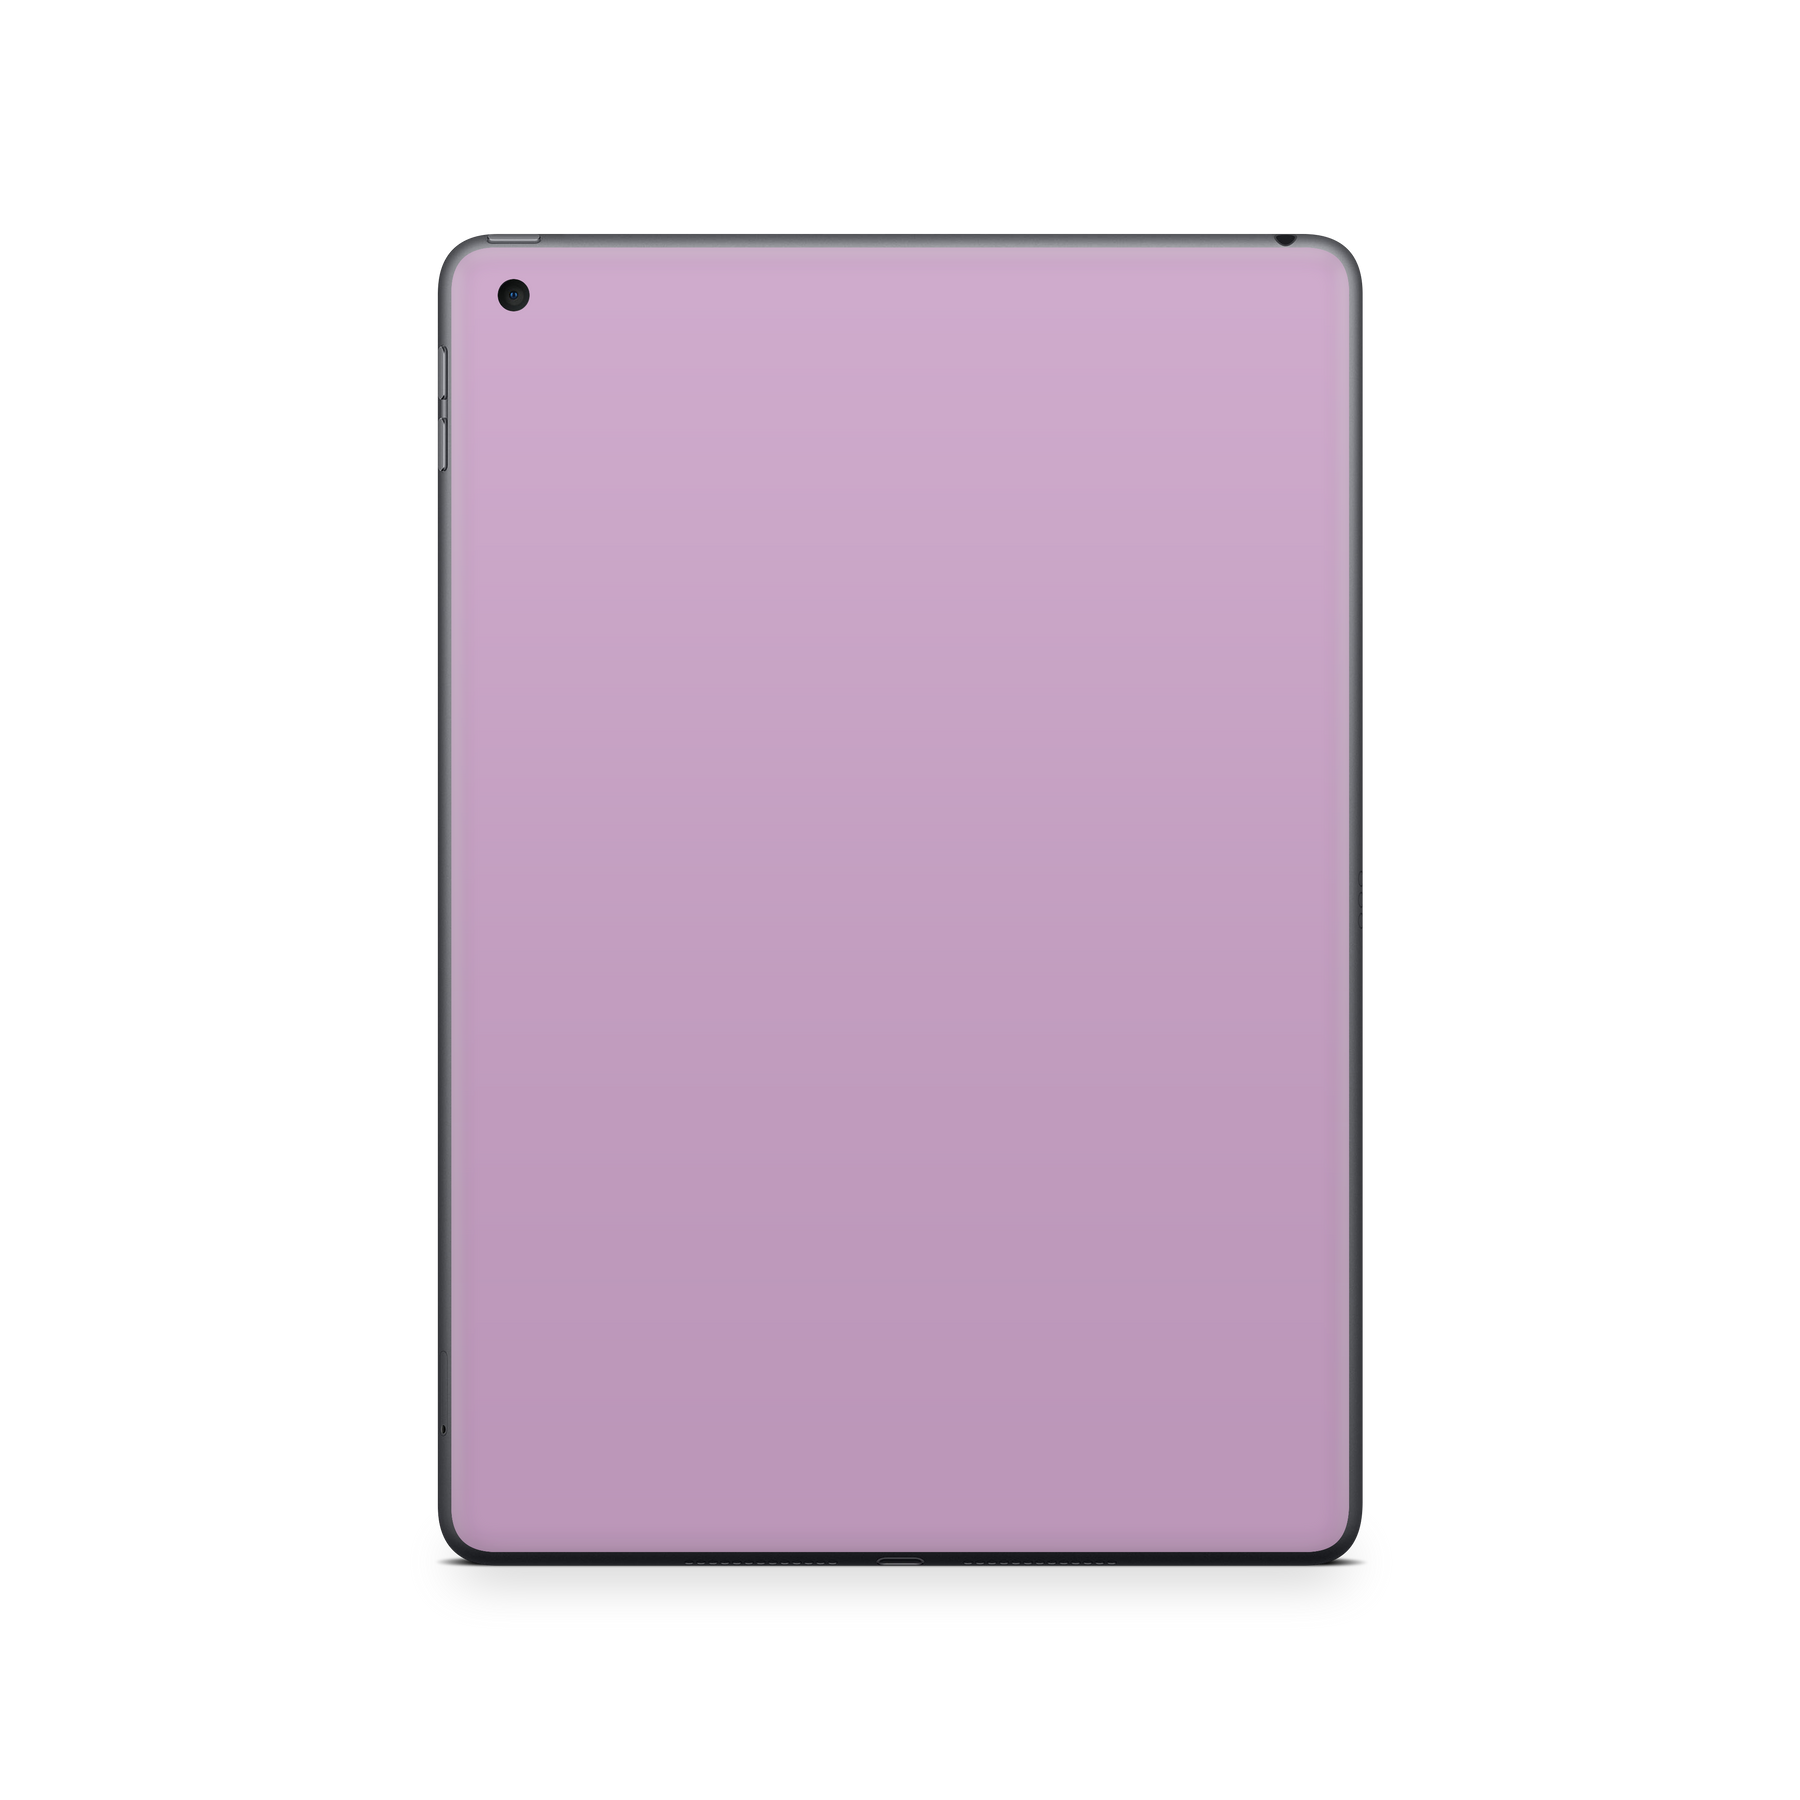 Apple iPad 10.2 Wi-Fi (Gen 8) Soft Lilac Skin